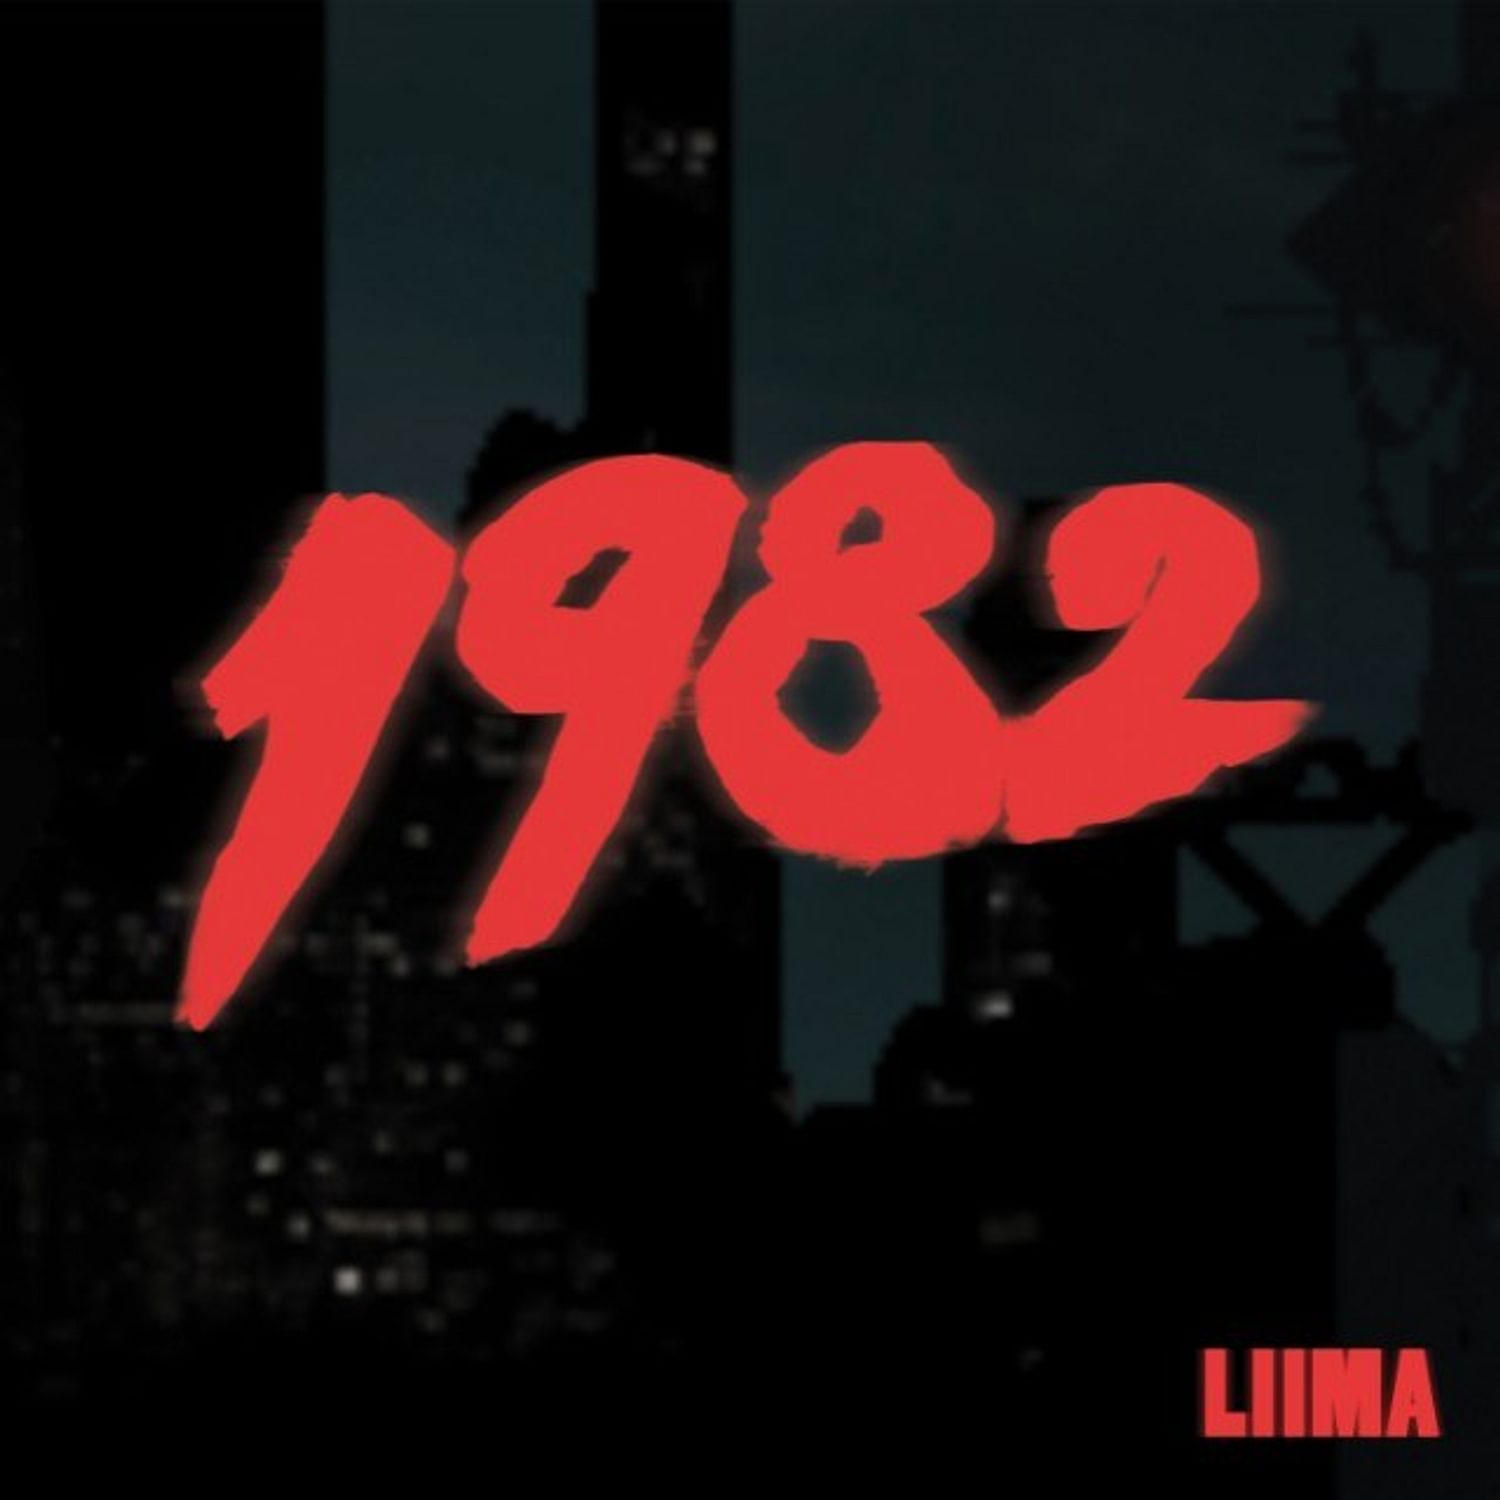 Liima - 1982